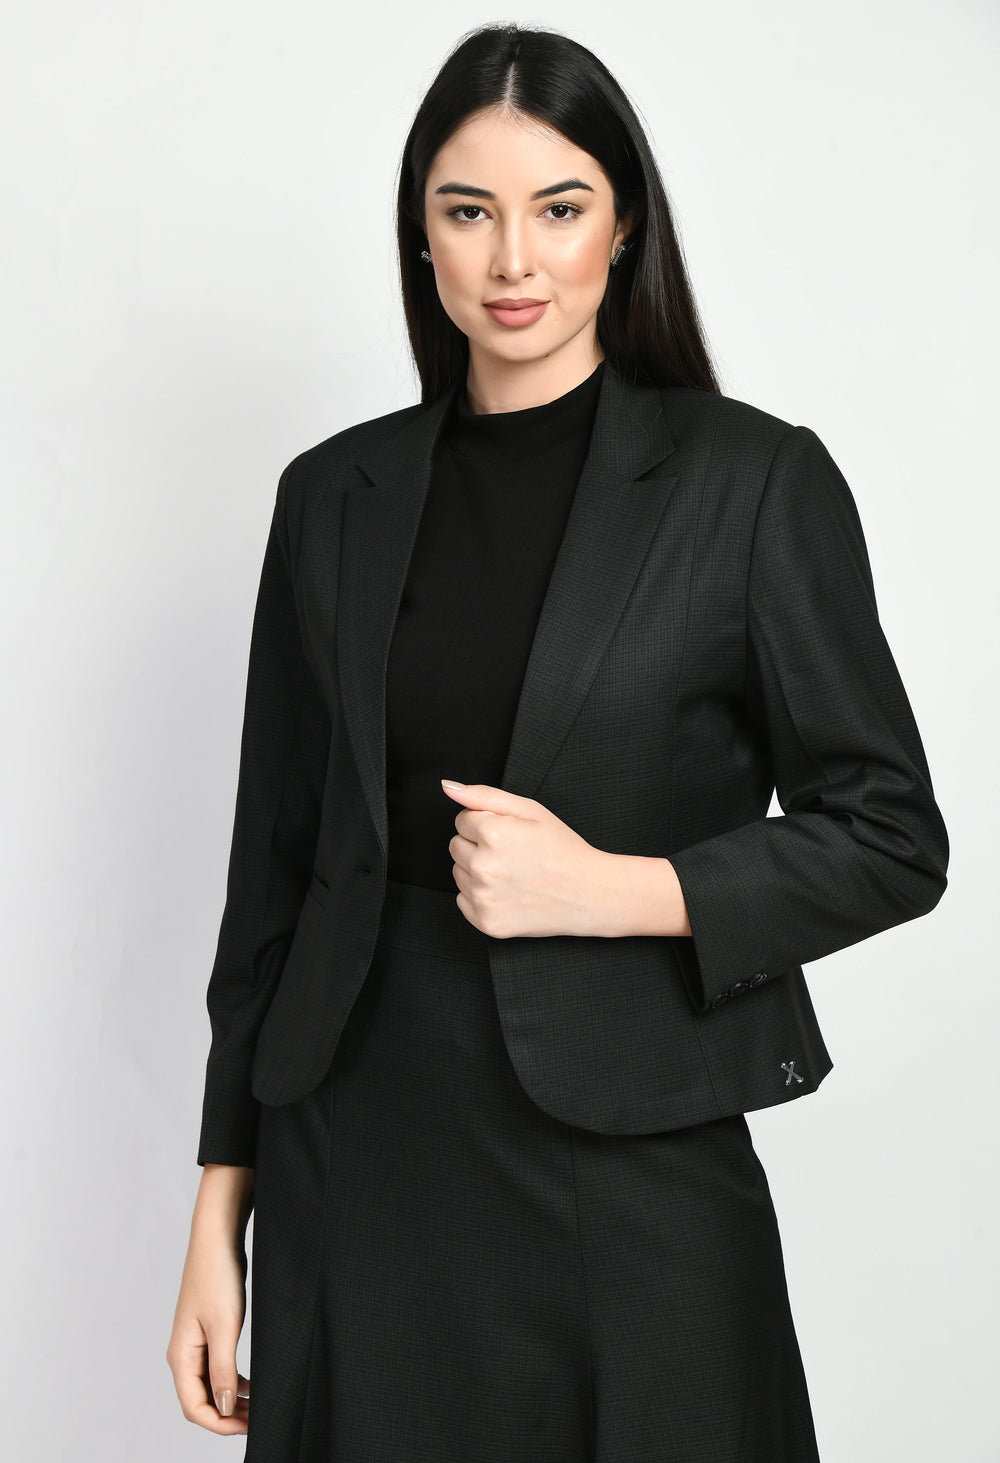 Black-Cotton-Blend-Motivation-Short-Blazer-Pencil-Skirt-Suit